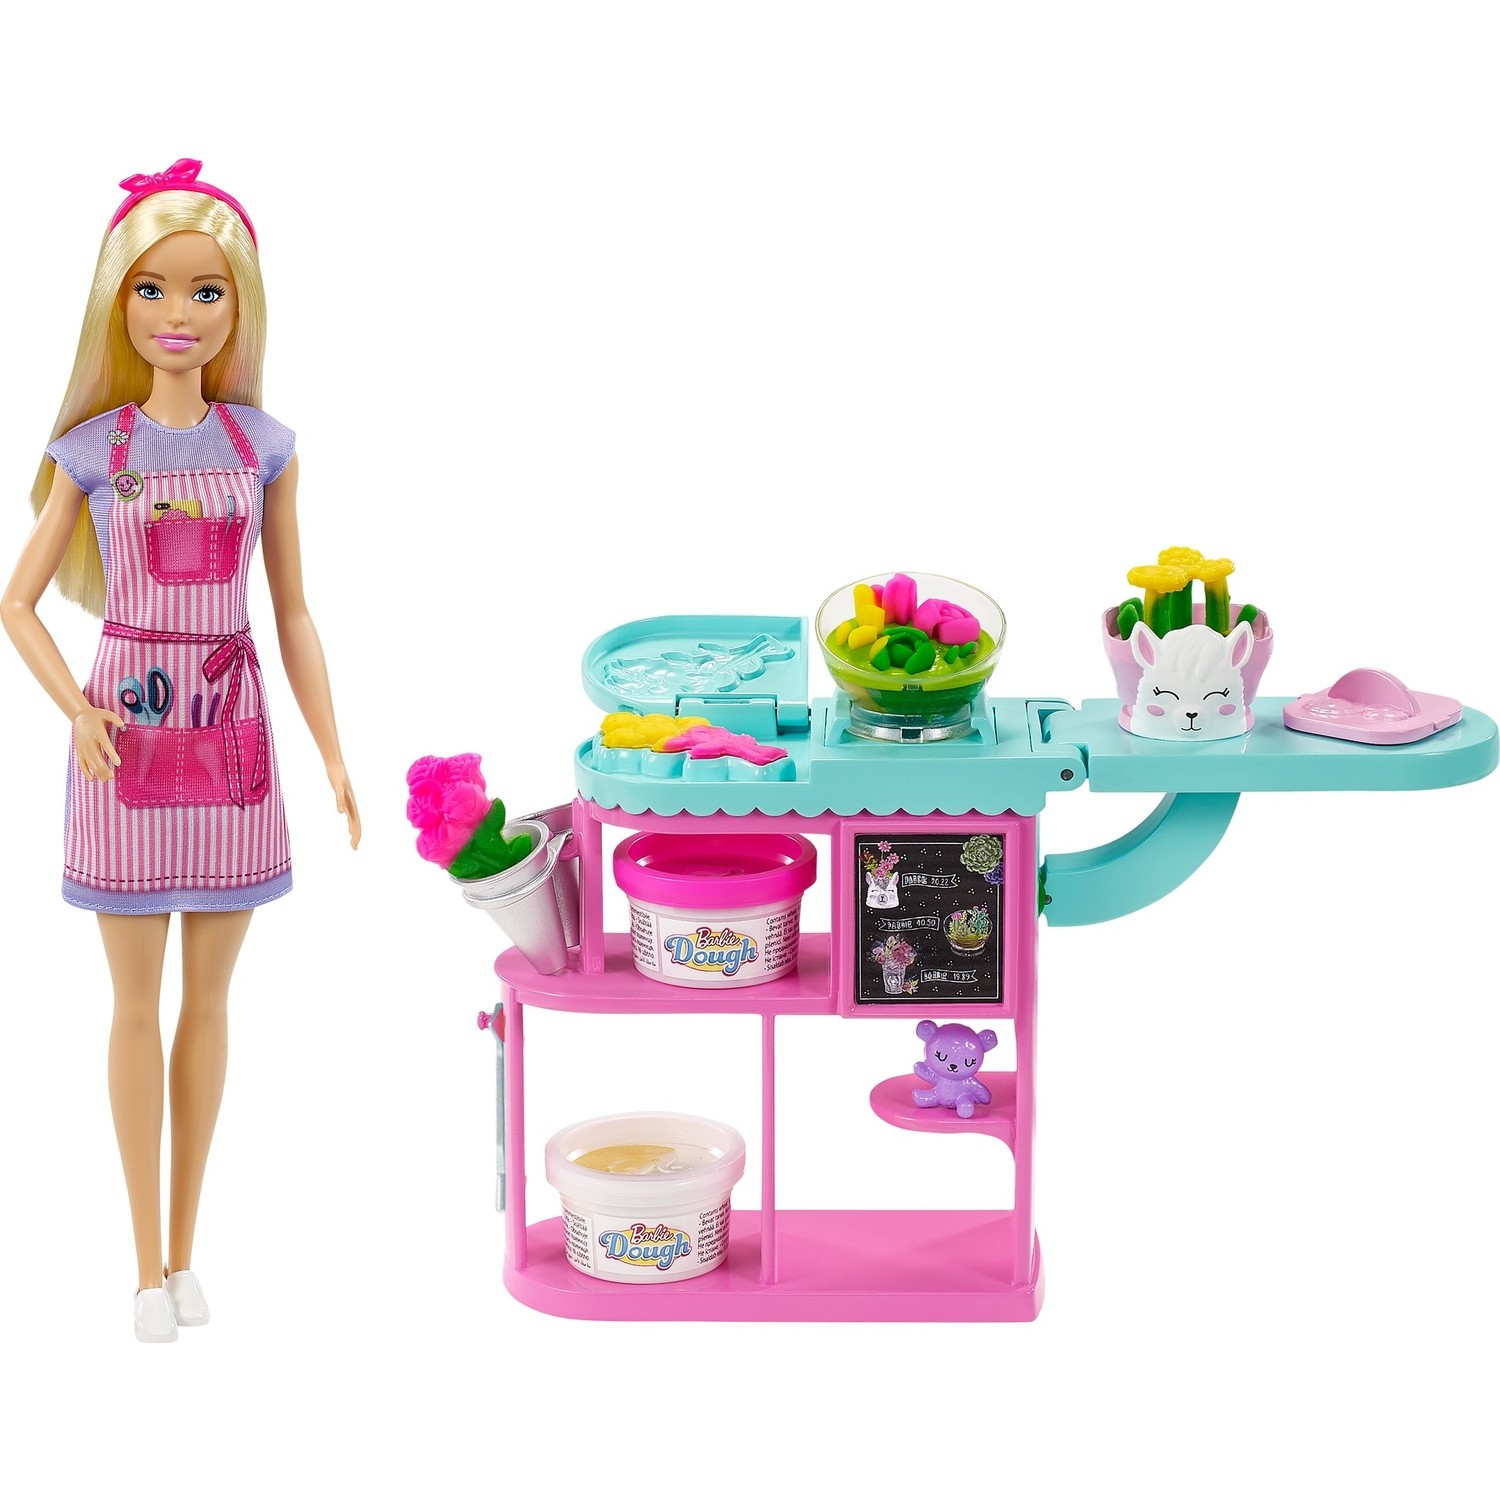 Кукла Barbie Чичекчи и игровой набор Gtn58